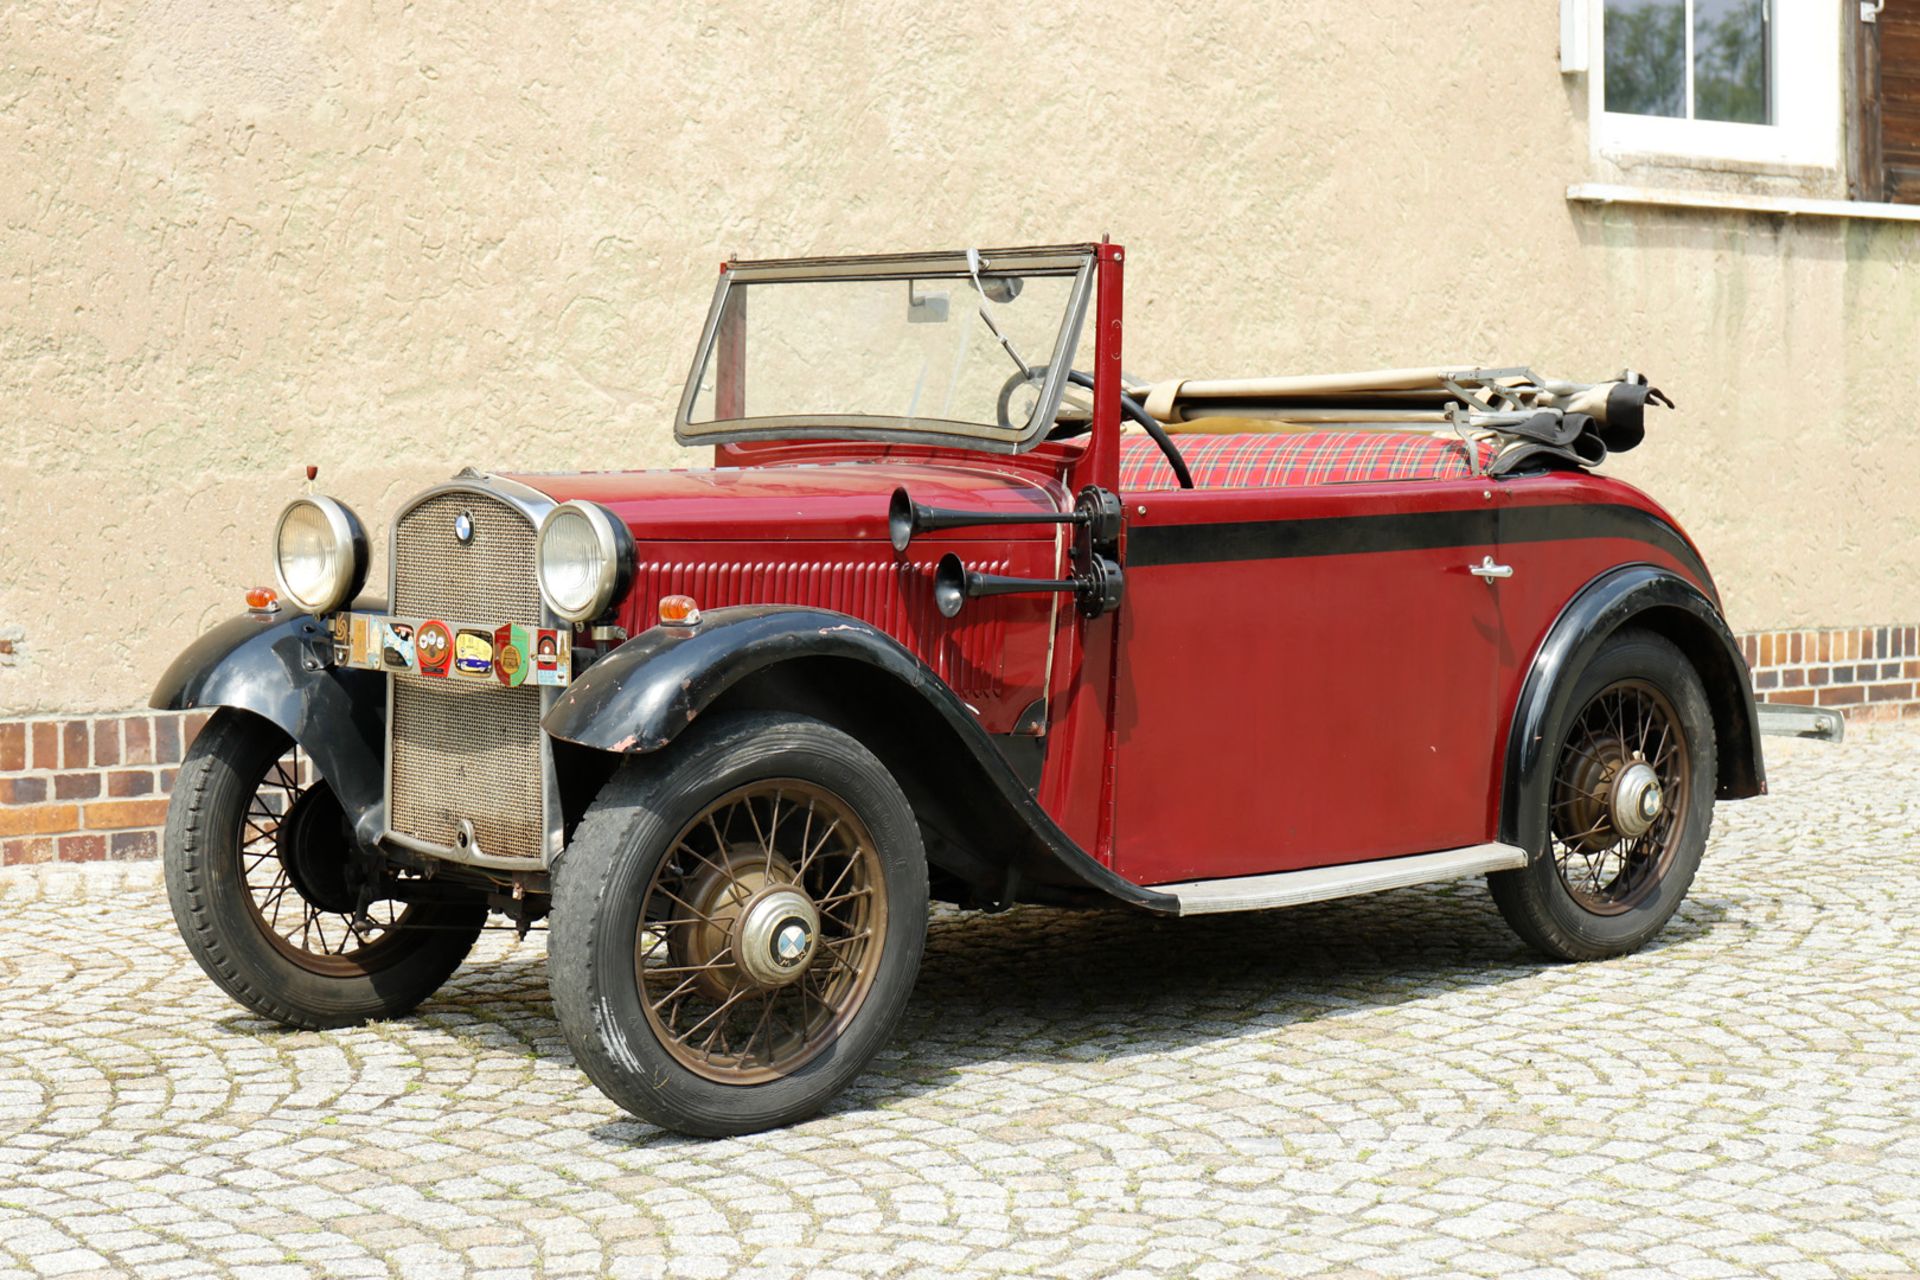 Oldtimer BMW Cabriolet 1933 AM 4 / 33442, ccm 782, PS 20/3500, 4 Zylinder, Stahlkarosserie, gefertig - Bild 25 aus 25